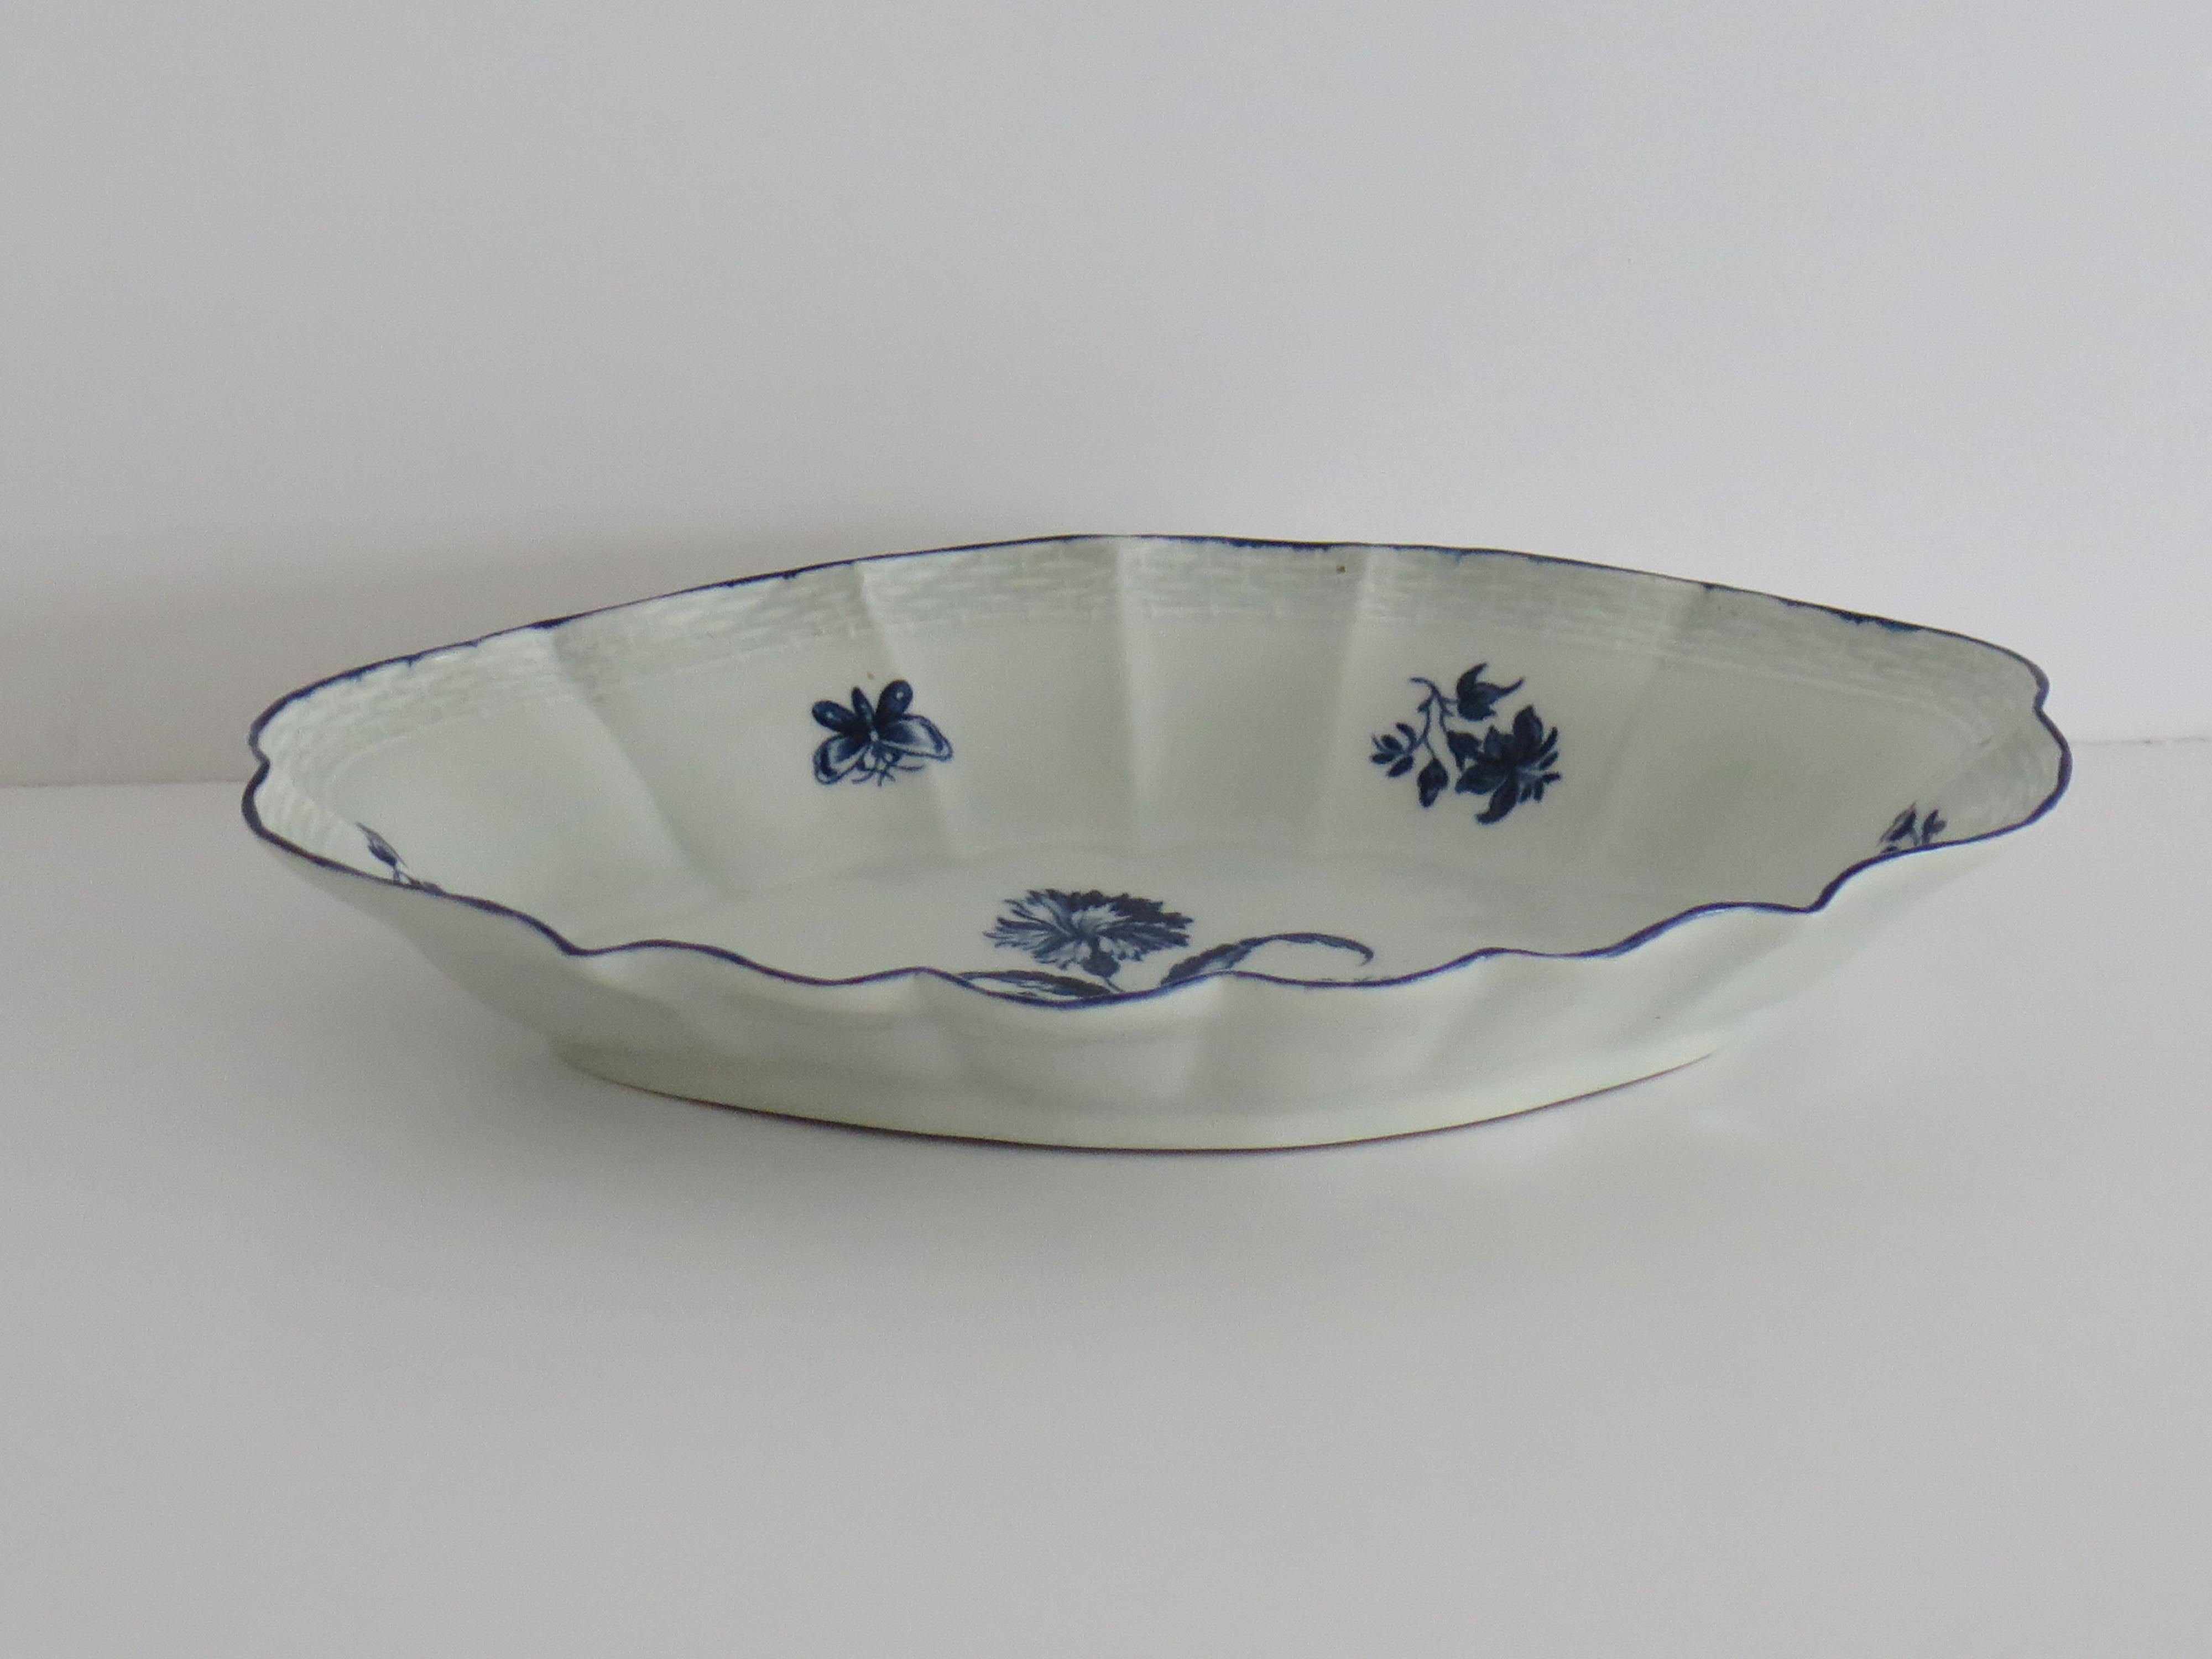 Il s'agit d'un très bon plat à dessert ouvert en porcelaine de Worcester de la première période (Dr. Wall), avec un motif floral bleu cobalt profond et une marque Crescent à la base, datant de 1765 à 1770.

Il s'agit d'une pièce bien moulée avec un